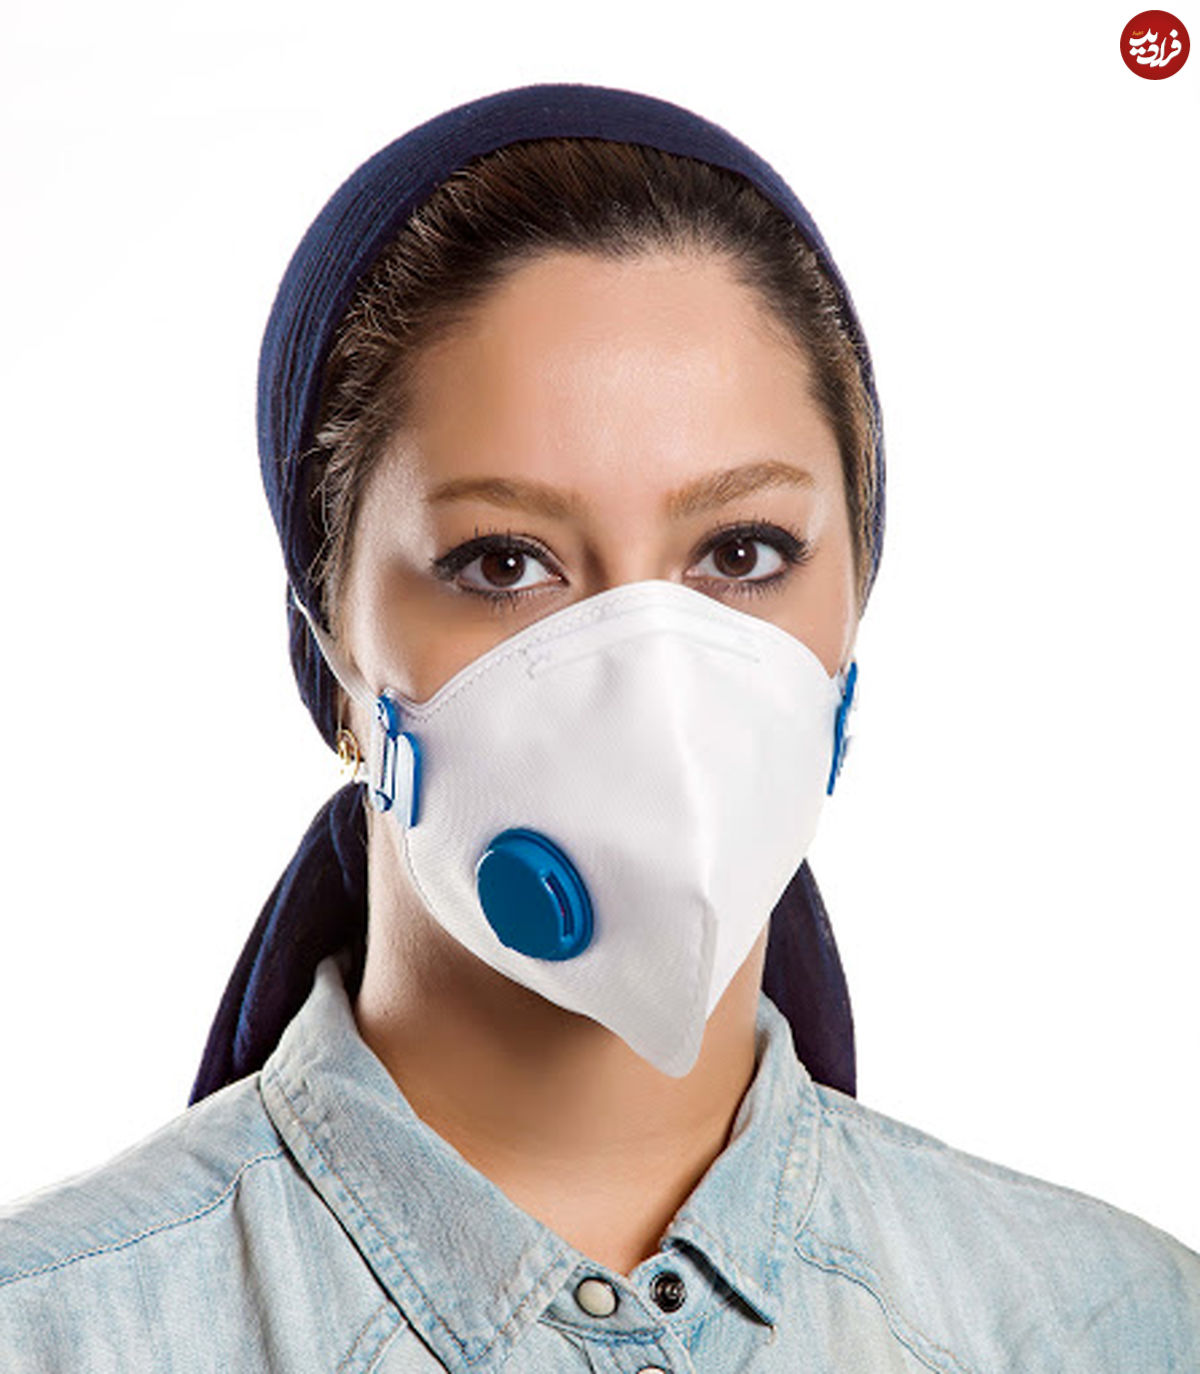 ماسک فیلتردار برای افراد مبتلا به کرونا مناسب نیست